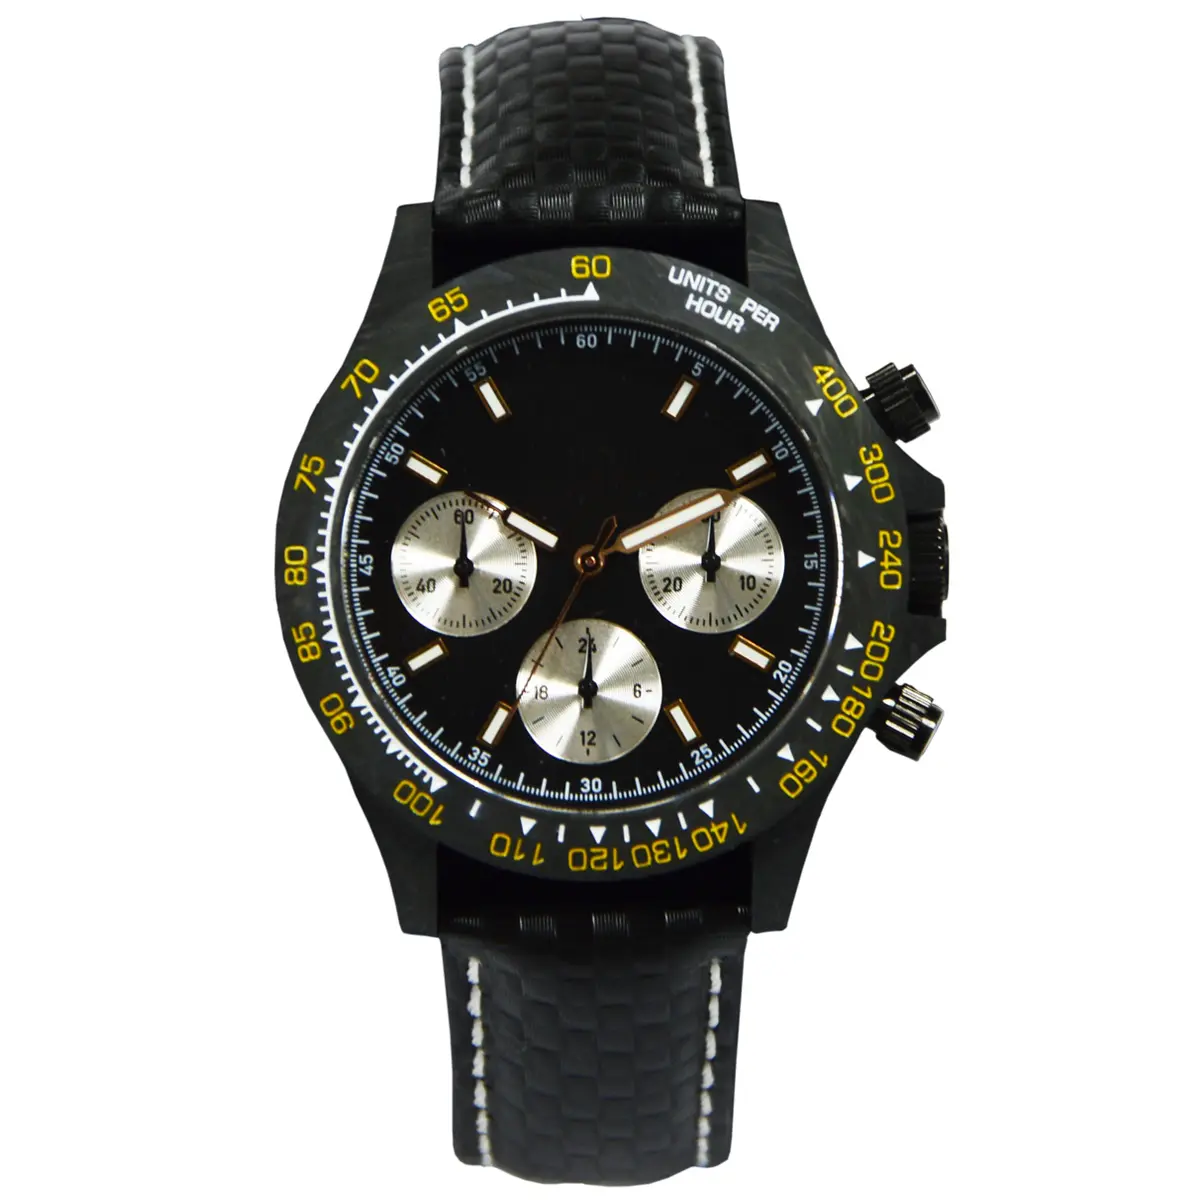 Movimento hb personalizado high-end material de fibra de carbono de luxo de marca relógios homens 1 comprador com pulseira de couro